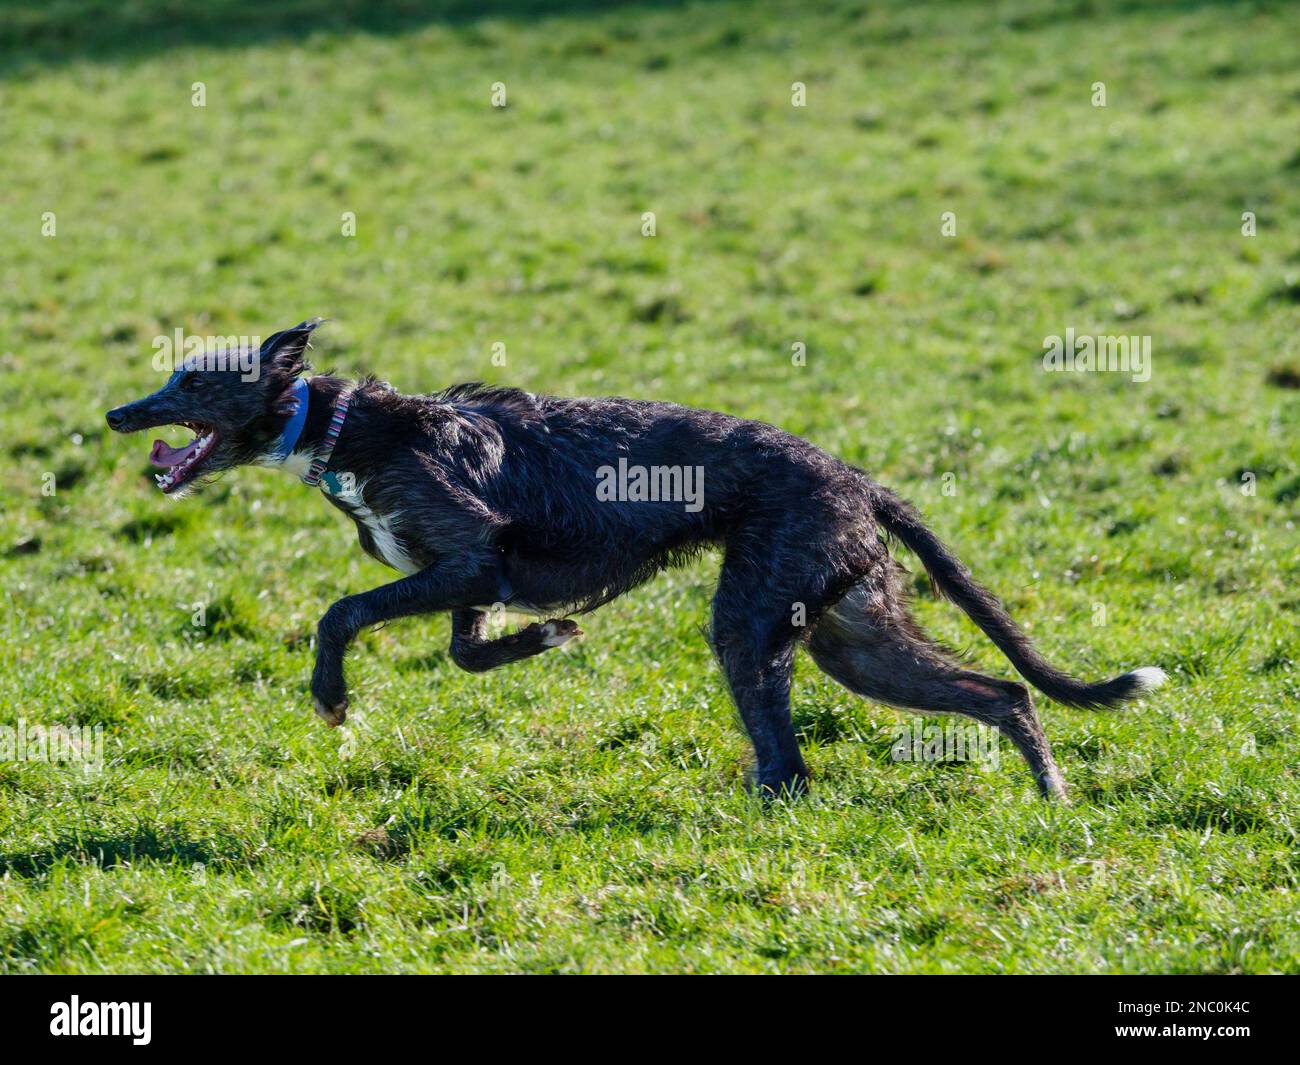 Cucciolo deerhound x levriero lurcher a piena velocità che si sposta nella fase estesa del galoppo a doppia sospensione sospiro Foto Stock